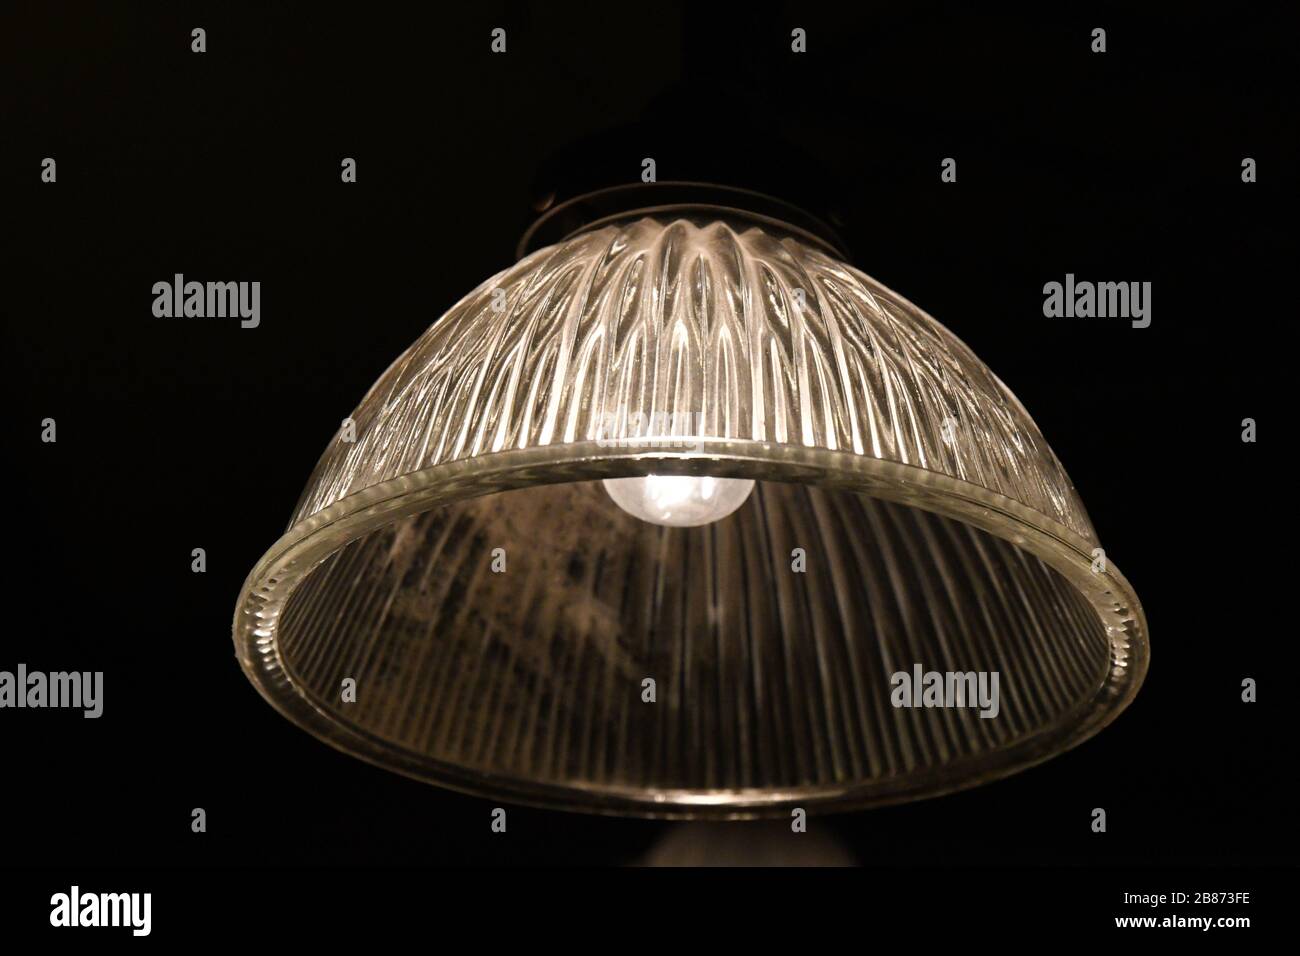 Lampadaire en verre orné de style vintage se ferme sur fond noir. Surface striée de la lampe en verre transparente avec ampoule à l'intérieur. Suspension ancienne Banque D'Images